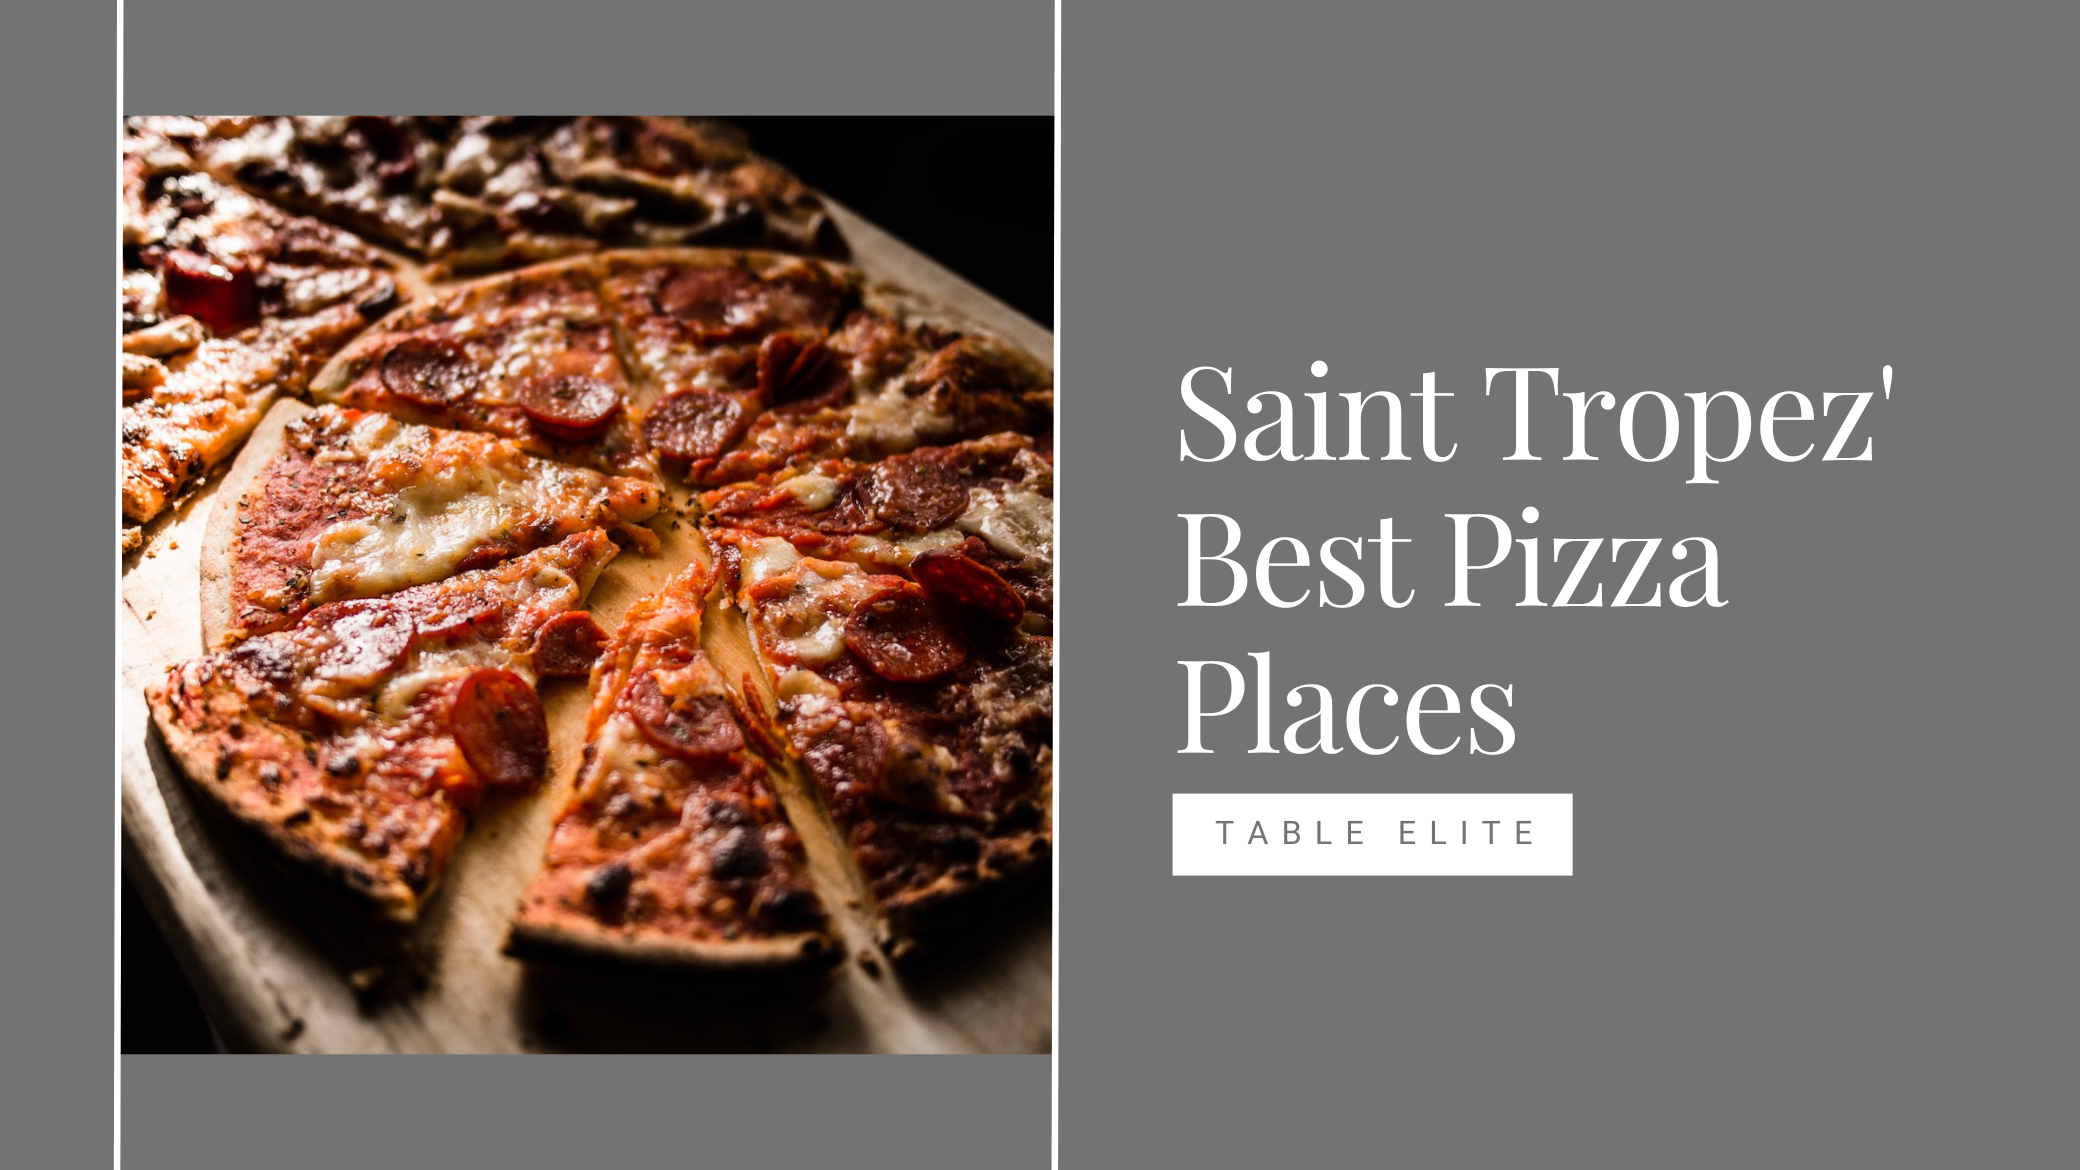 St. Tropez's Best Pizza Places